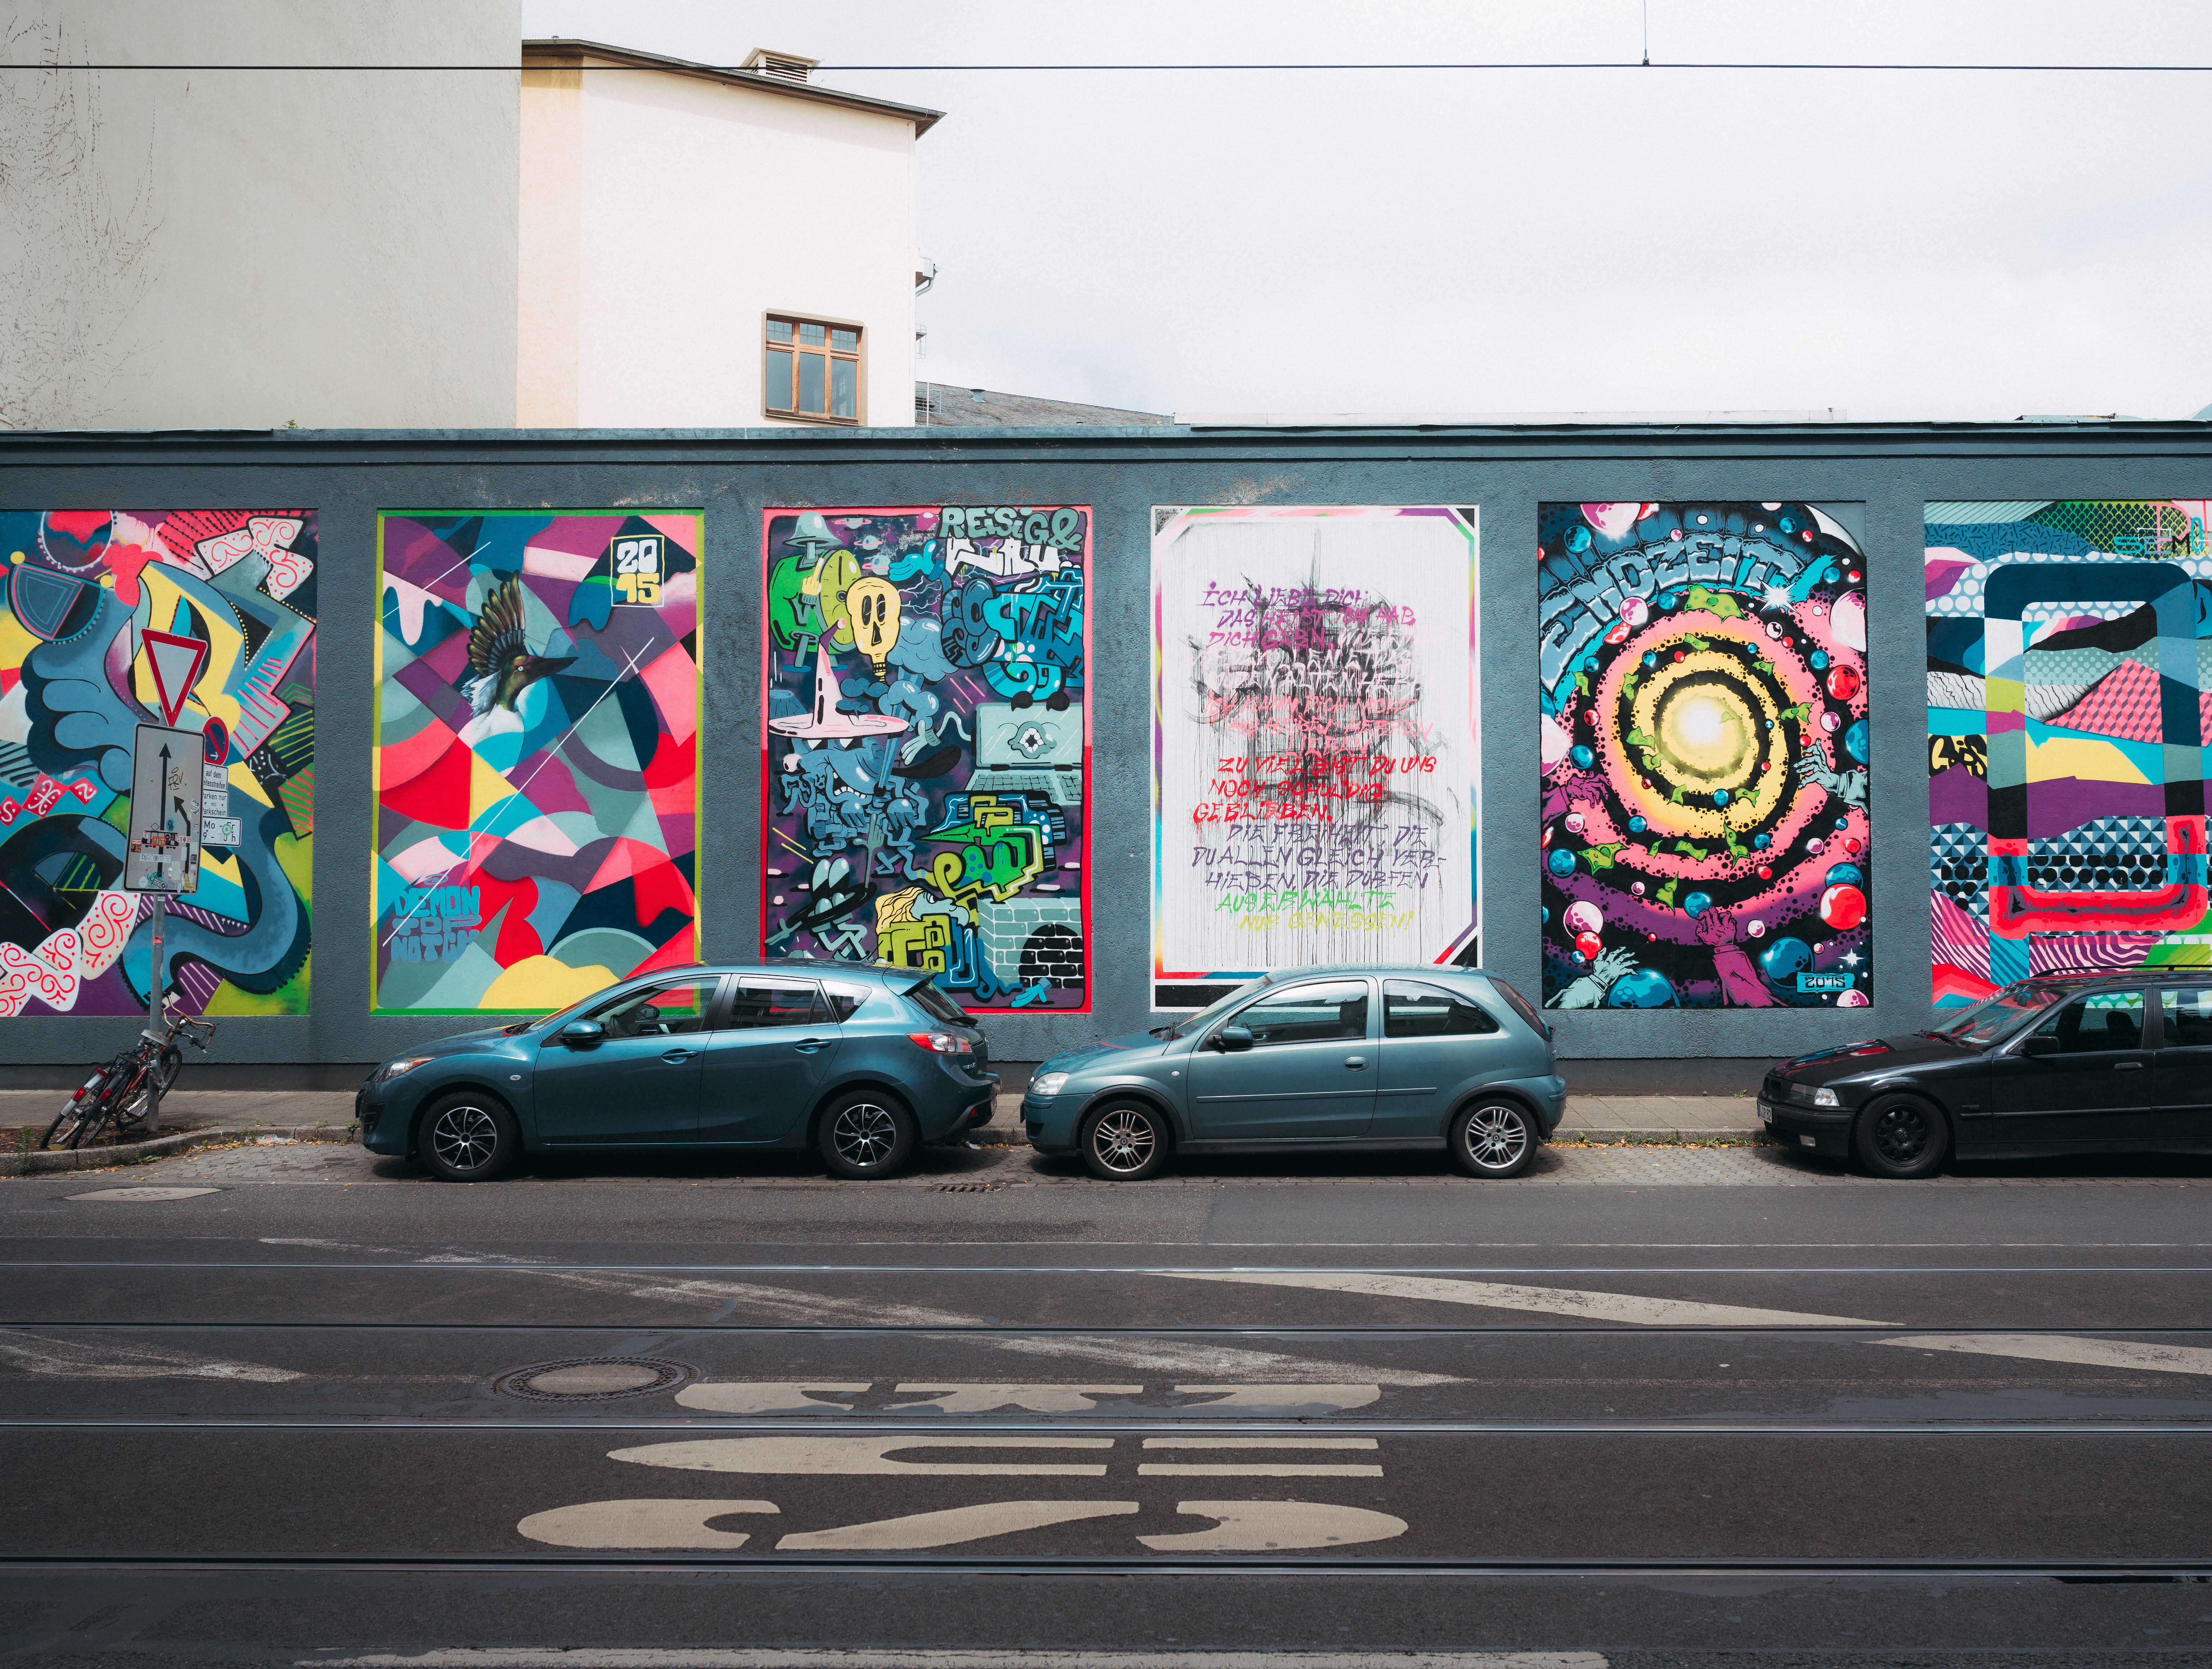 Bunte Street-Art-Mauer in Düsseldorf mit Kunstwerken wie in einer Galerie. © Tourismus NRW e.V./Johannes Höhn